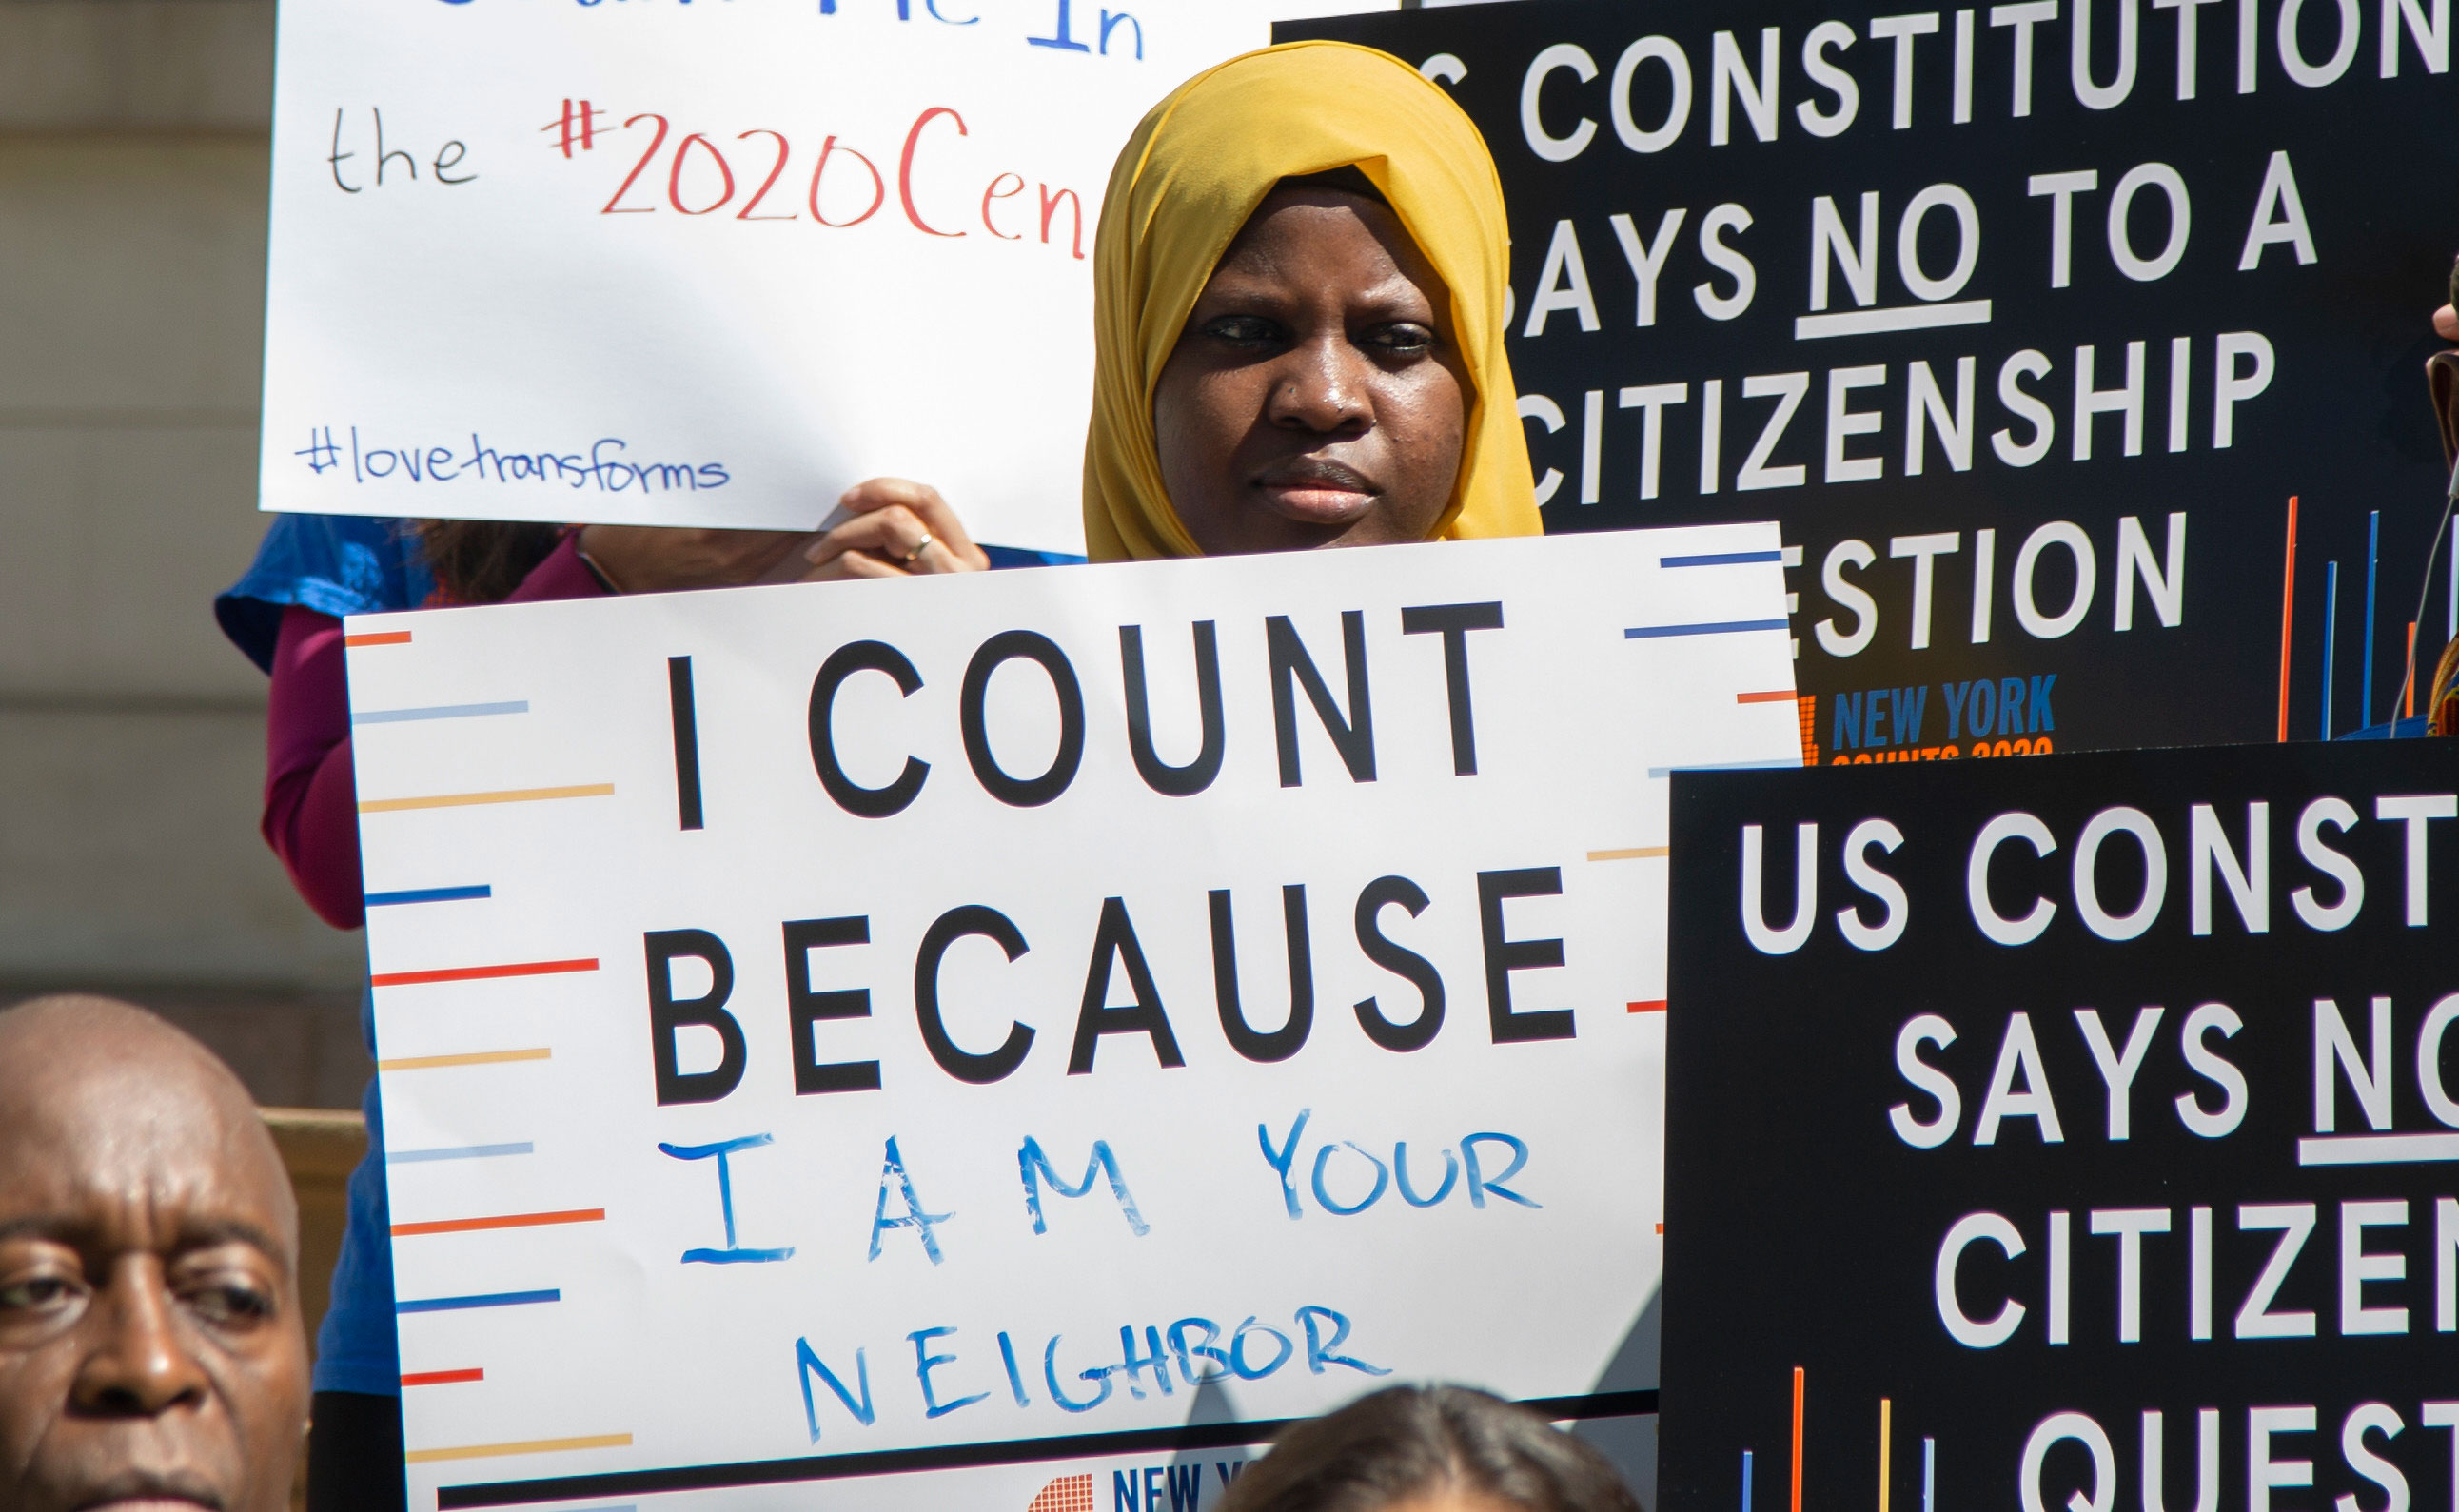 이미지는 뉴욕시 의회 기자 회견에서“나는 네 이웃이기 때문에 나는 셀 수 없다”라는 표시를 들고있는 젊은이를 보여줍니다.